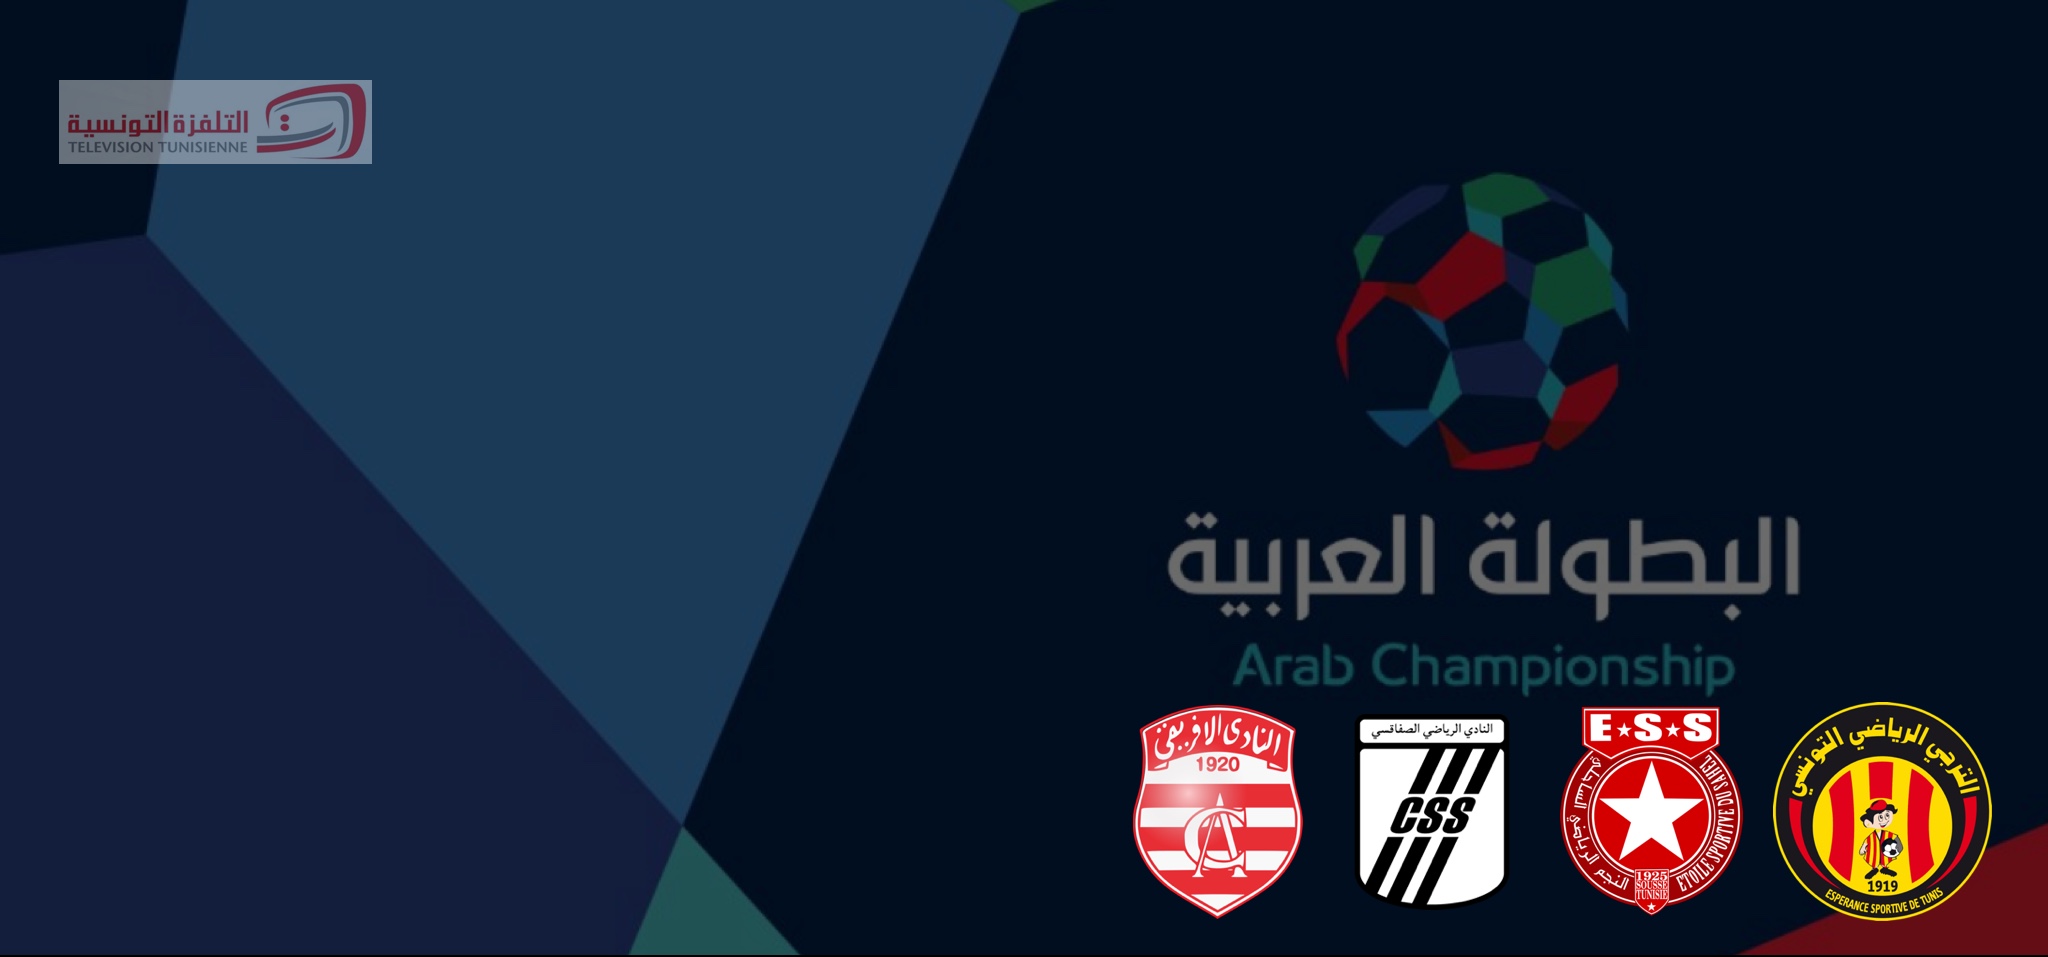 البطولة العربية للأندية نتائج قرعة المواجهات التونسية الرياضة